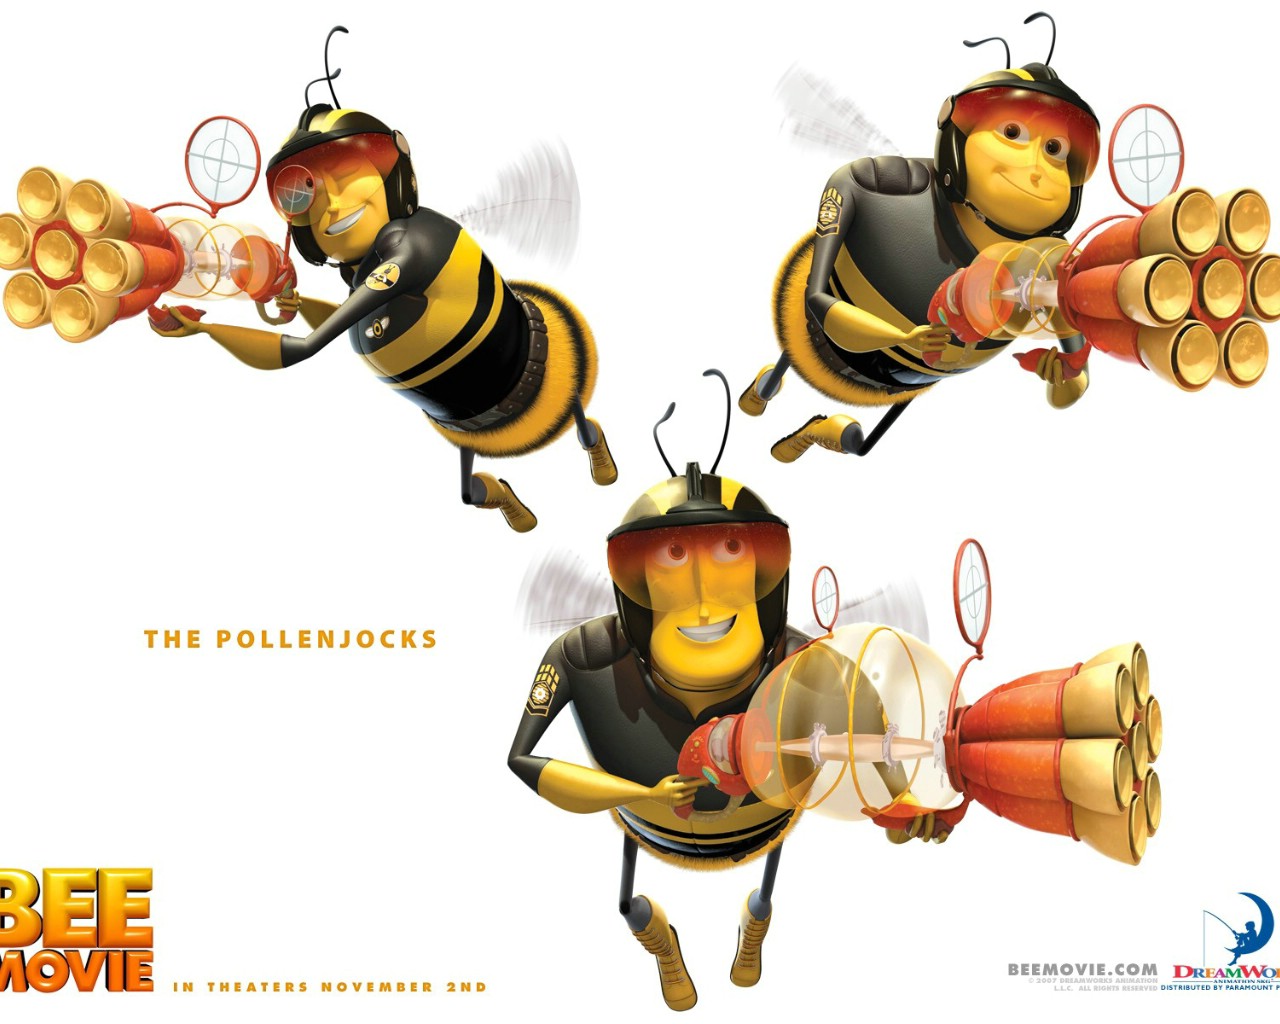 壁纸1280x1024电影壁纸 蜜蜂总动员 一只小蜜蜂 Bee Movie 2007 蜂电影 一只小蜜蜂壁纸 Movie Wallpaper Bee Movie 2007壁纸 《蜜蜂总动员 Bee Movie》壁纸 《蜜蜂总动员 Bee Movie》图片 《蜜蜂总动员 Bee Movie》素材 影视壁纸 影视图库 影视图片素材桌面壁纸